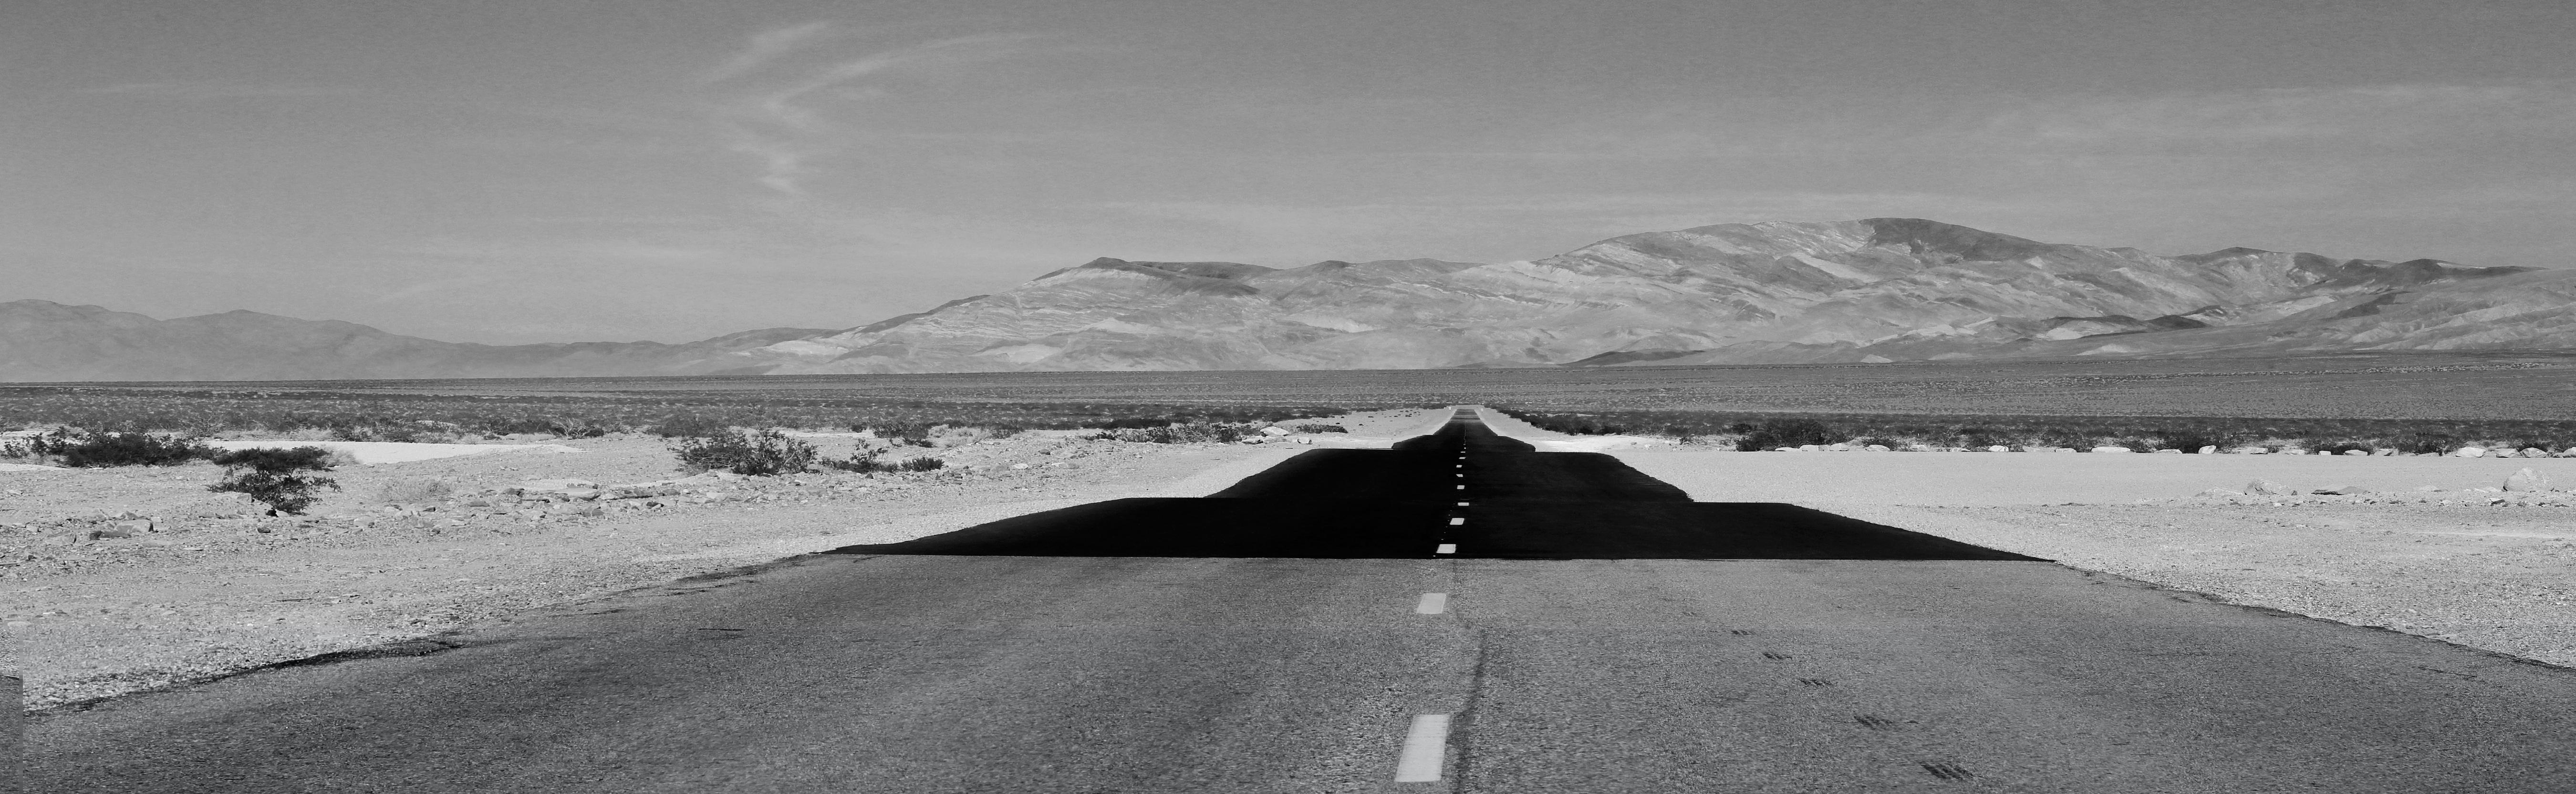 Chris Little Landscape Photograph - 'Black Top Ahead' - Black and White Photography - Landscape - Walker Evans